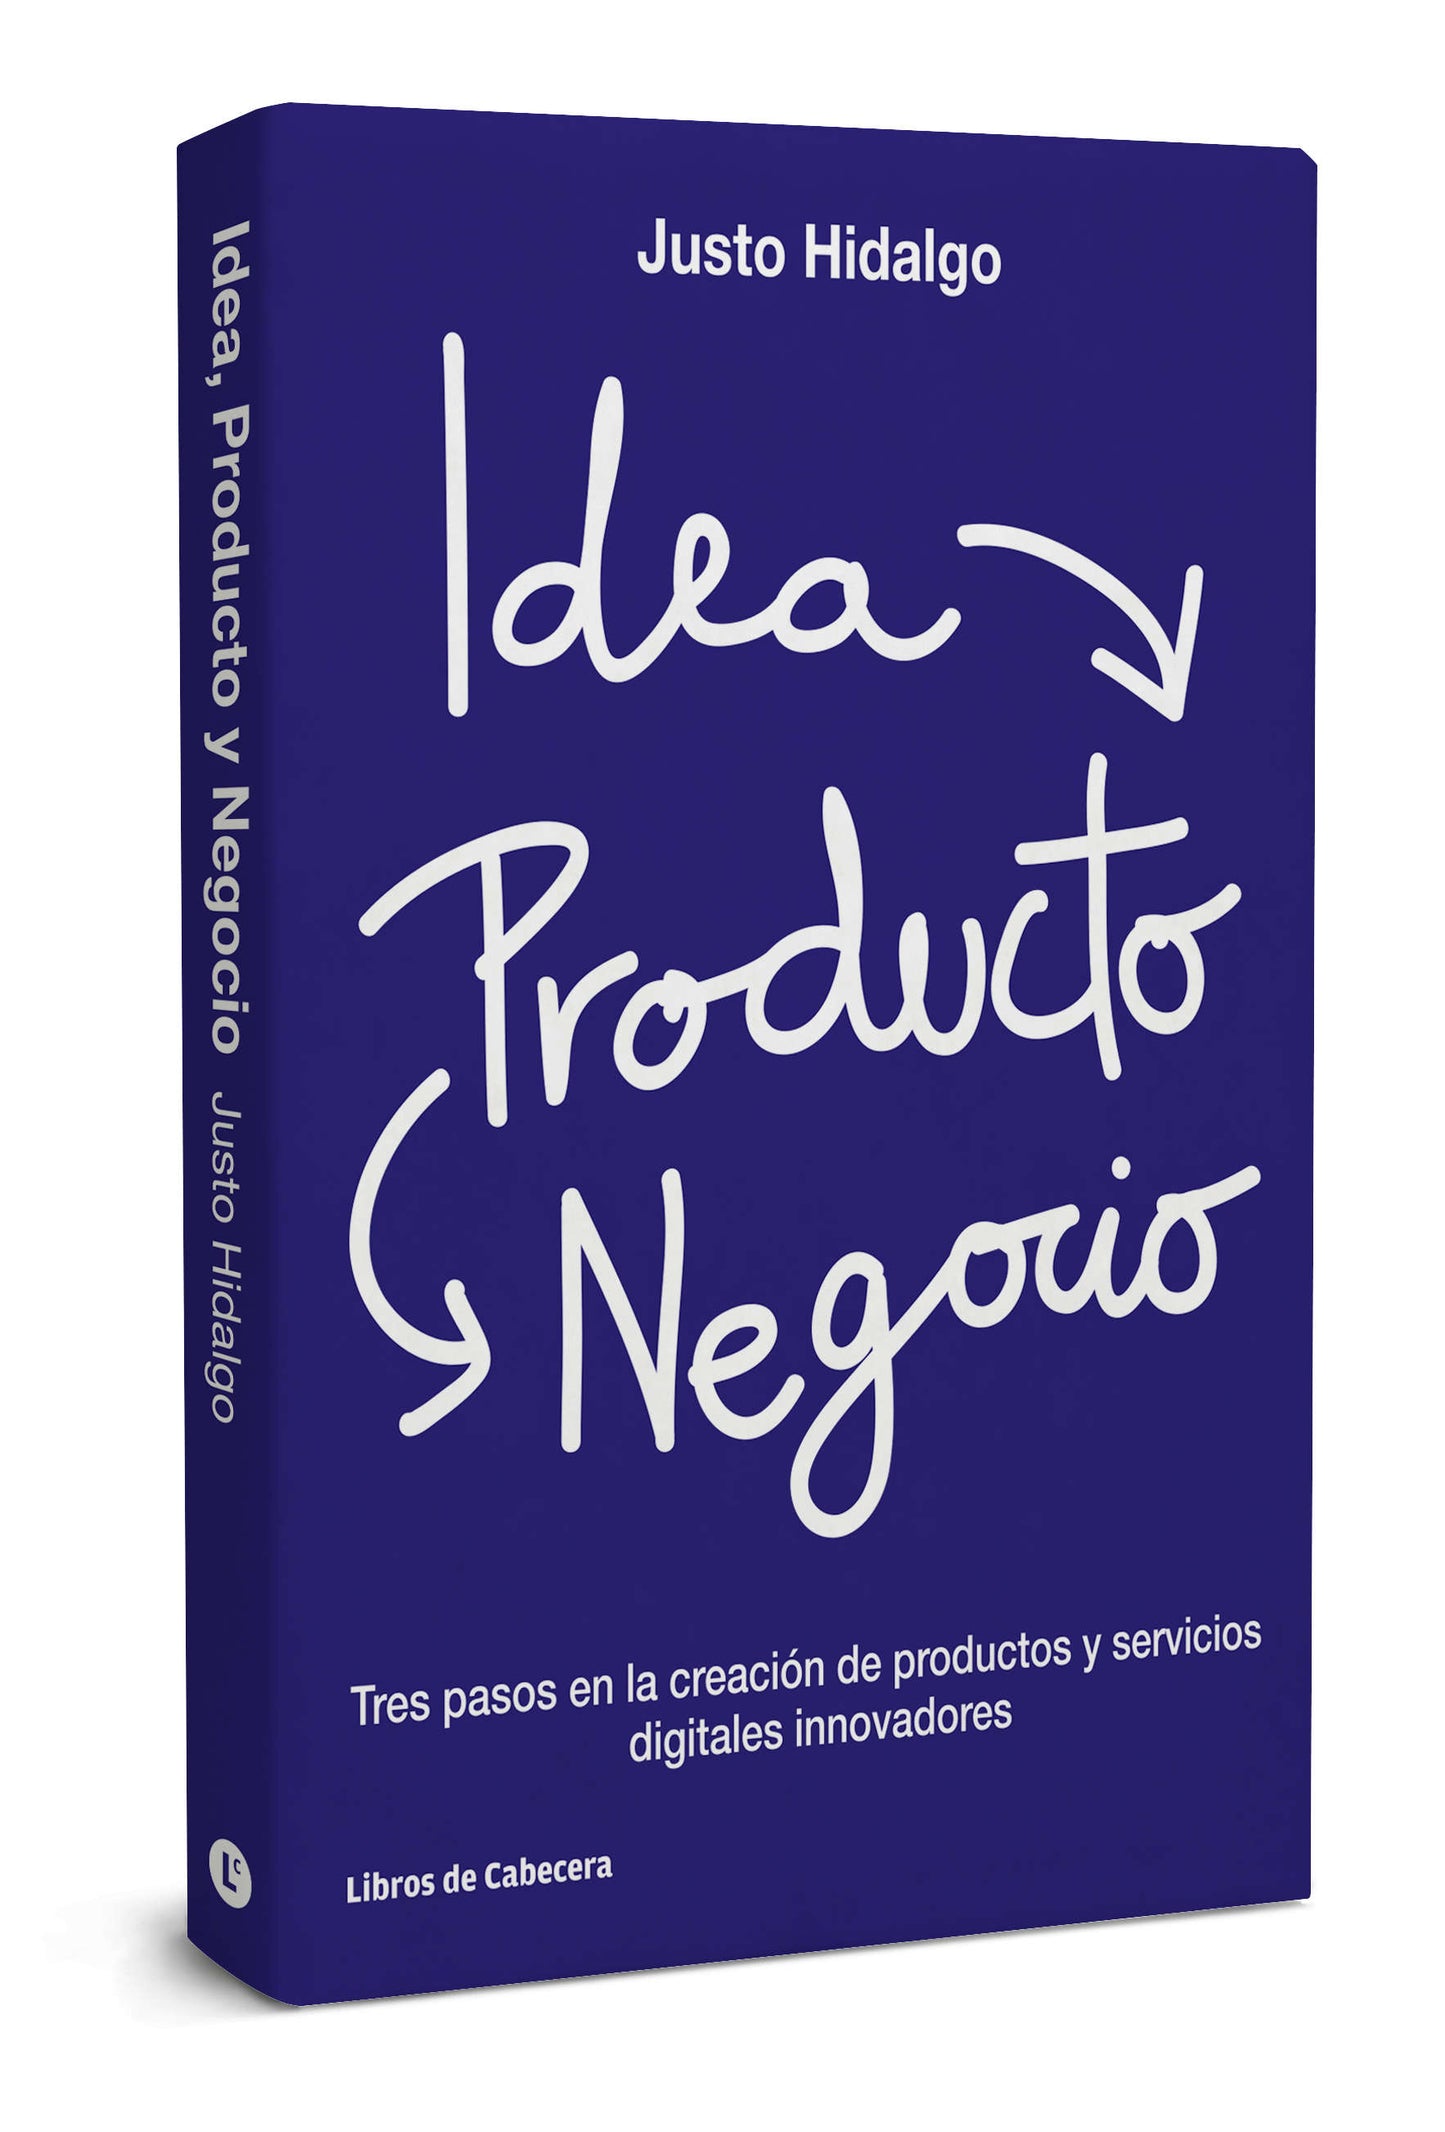 Idea, Producto y Negocio | Tres pasos en la creación de productos y servicios digitales innovadores